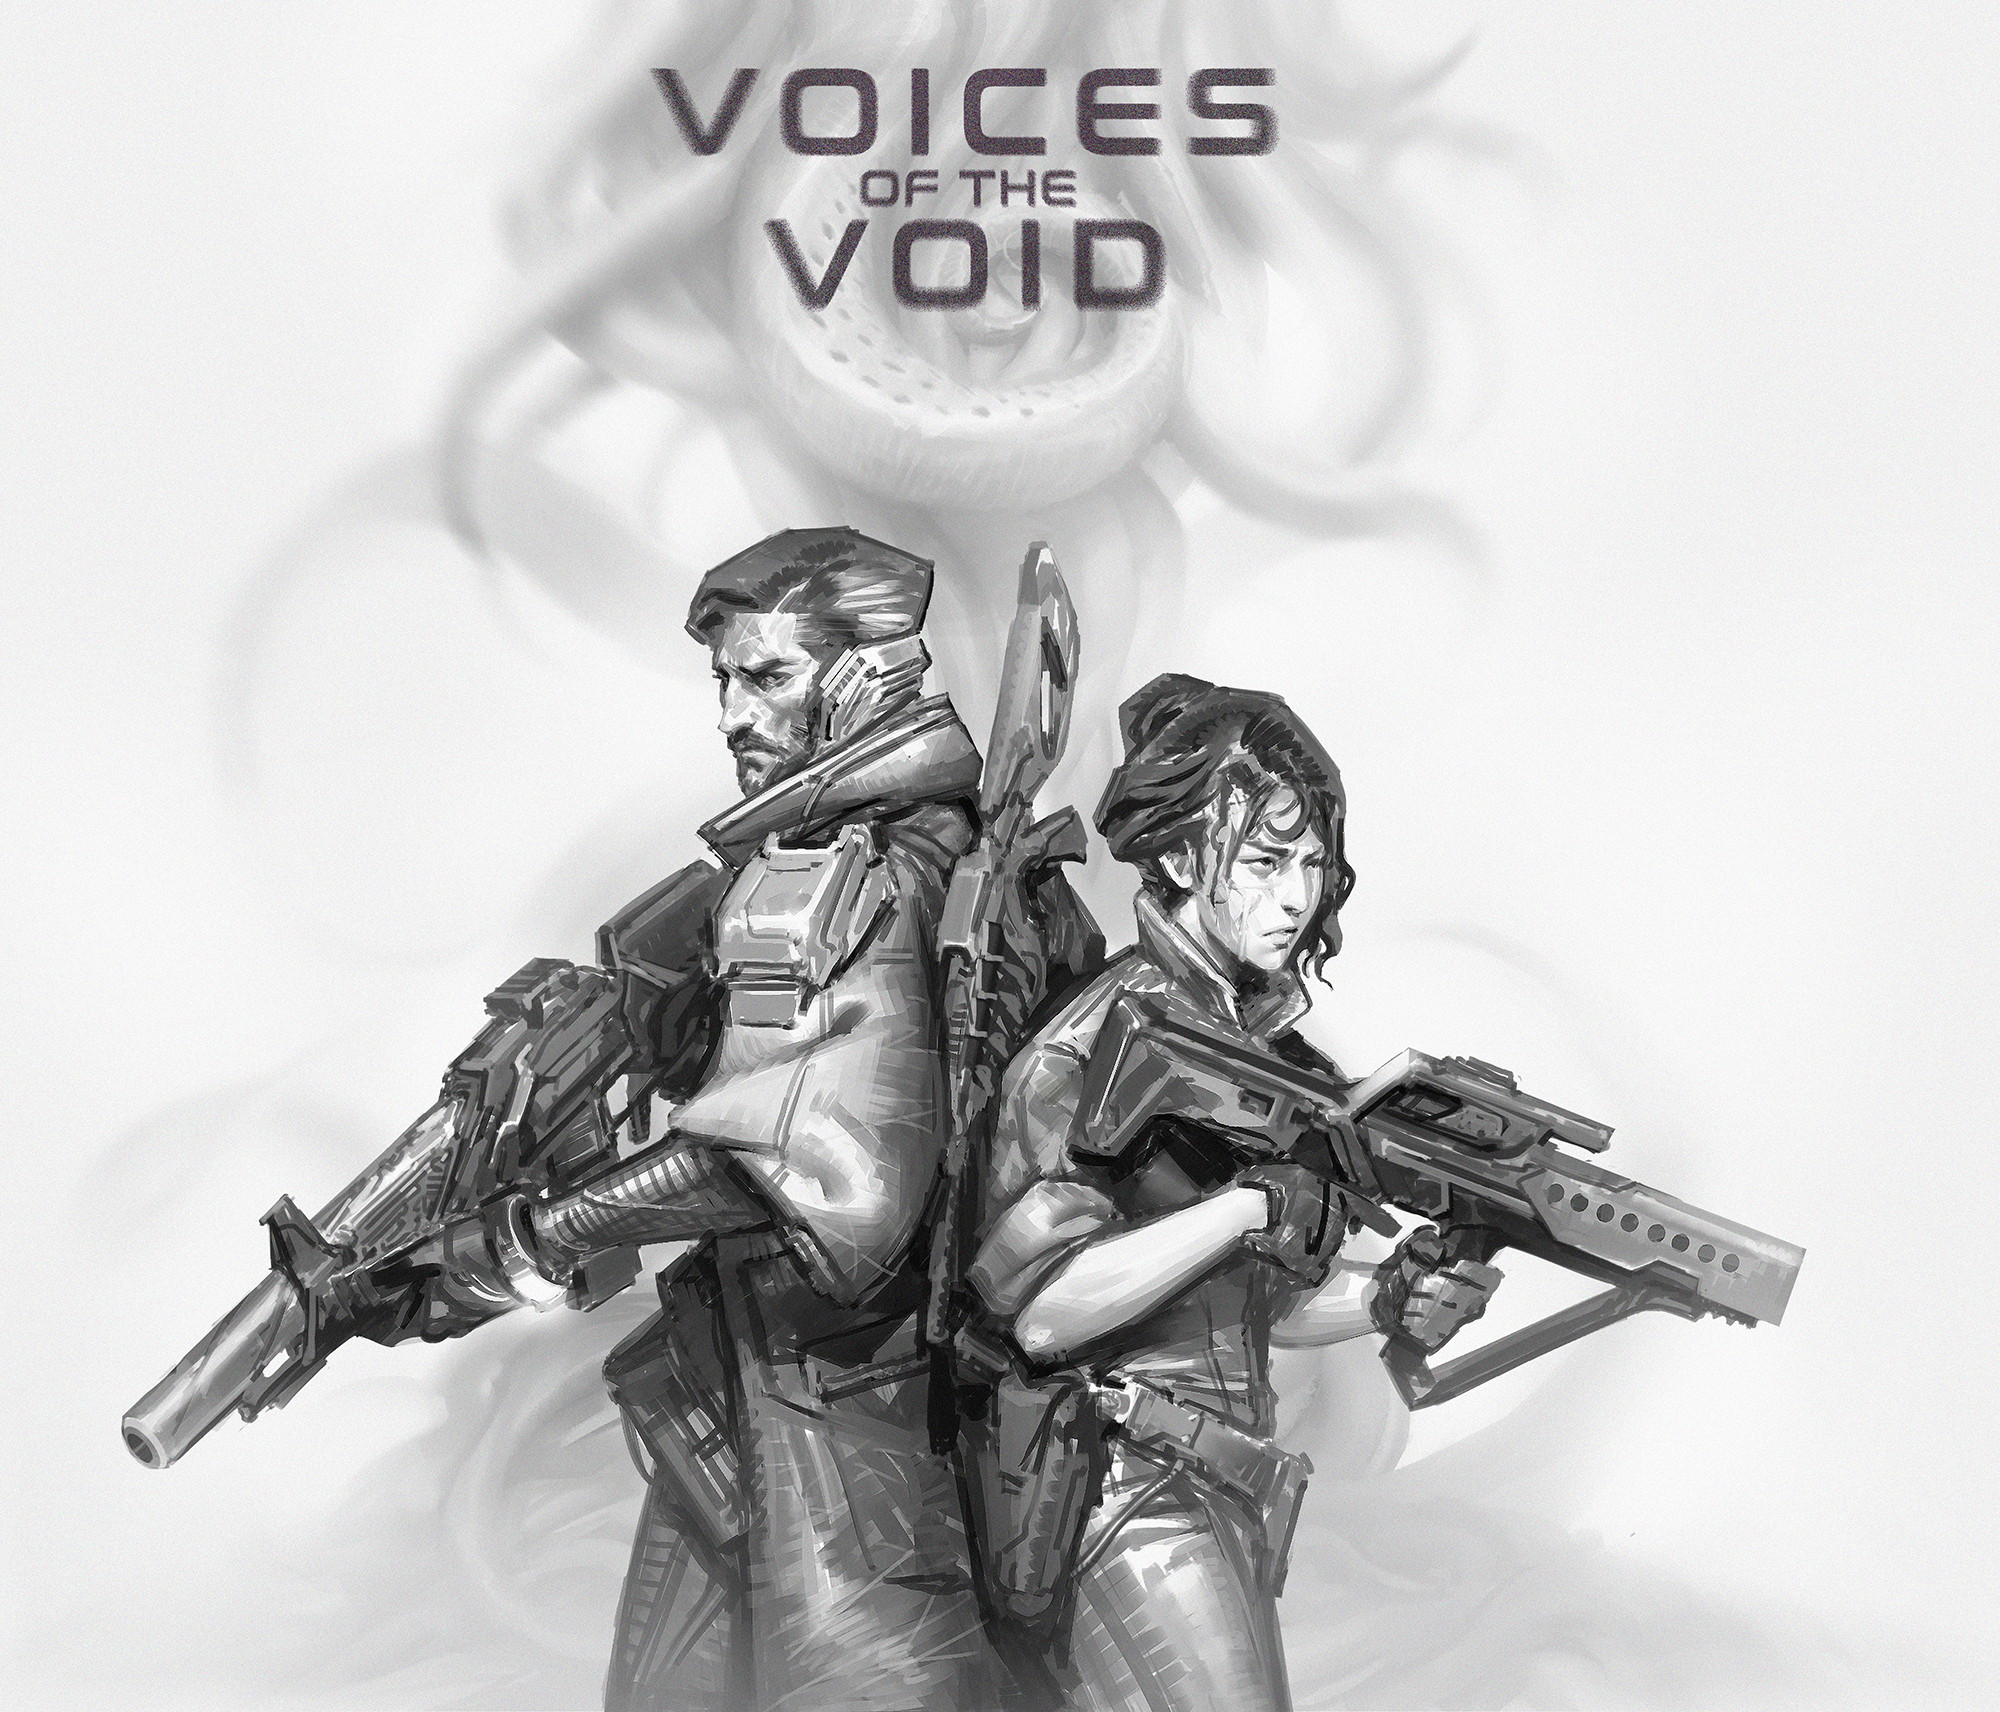 Войсес оф войд игра. Voices of the Void. Voices of the Void ariral. Voices of the Void Argemia. Voices of the Void kerfus.